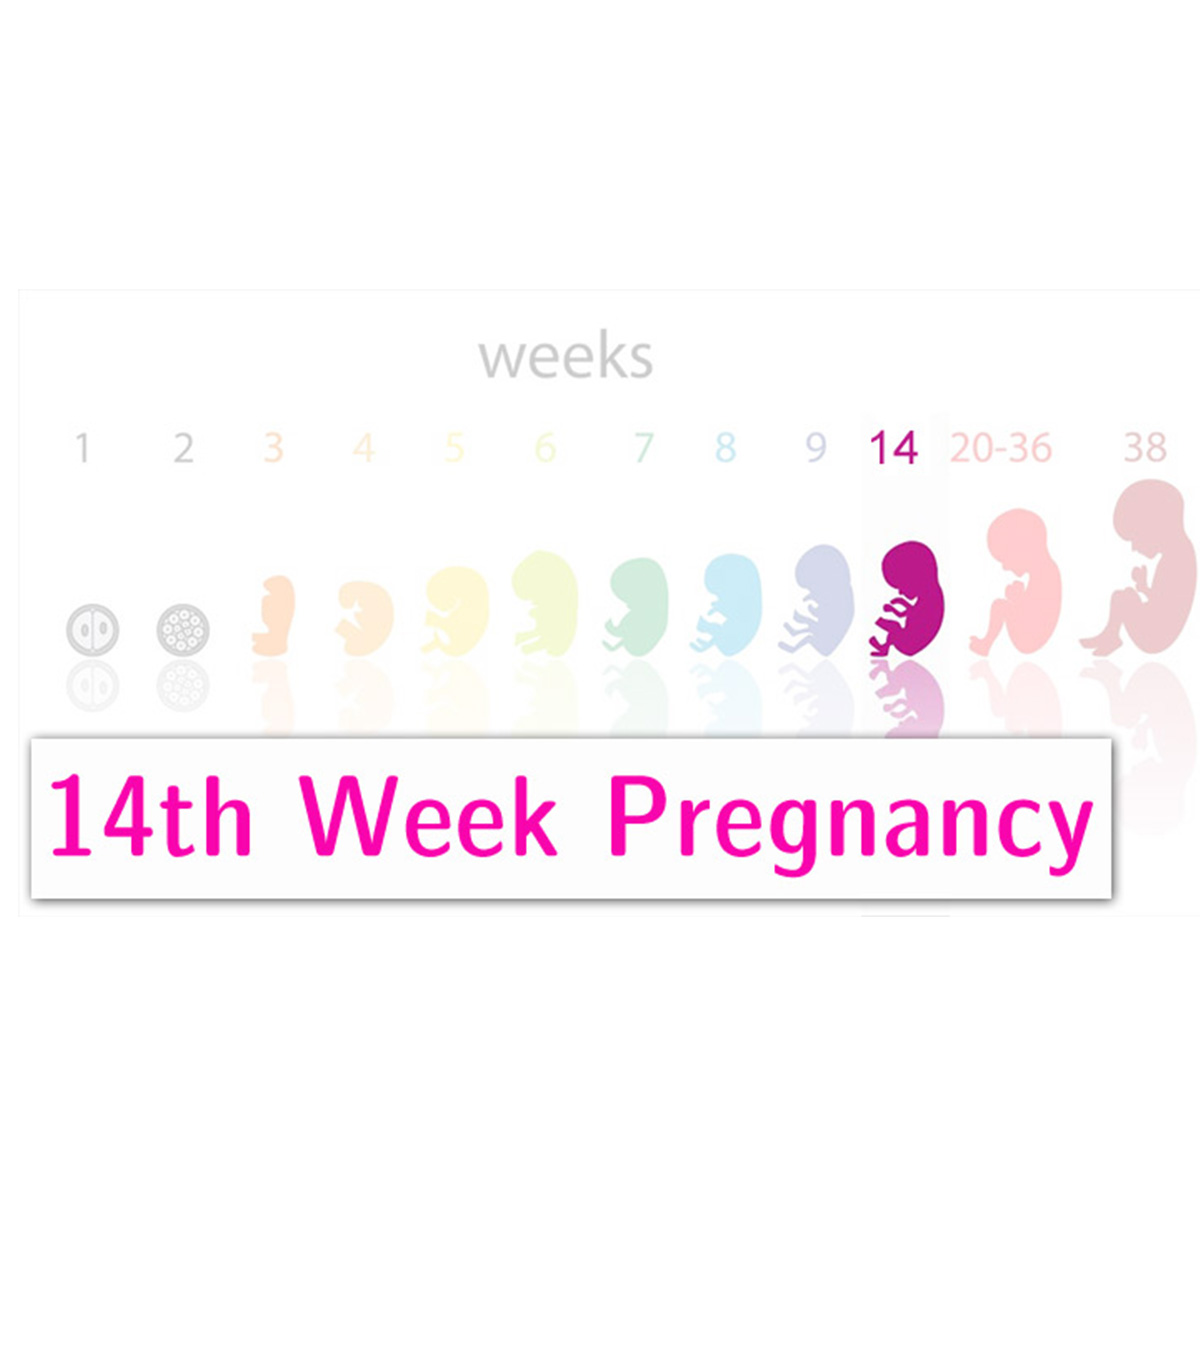 第14周妊娠:症状，婴儿发育和提示